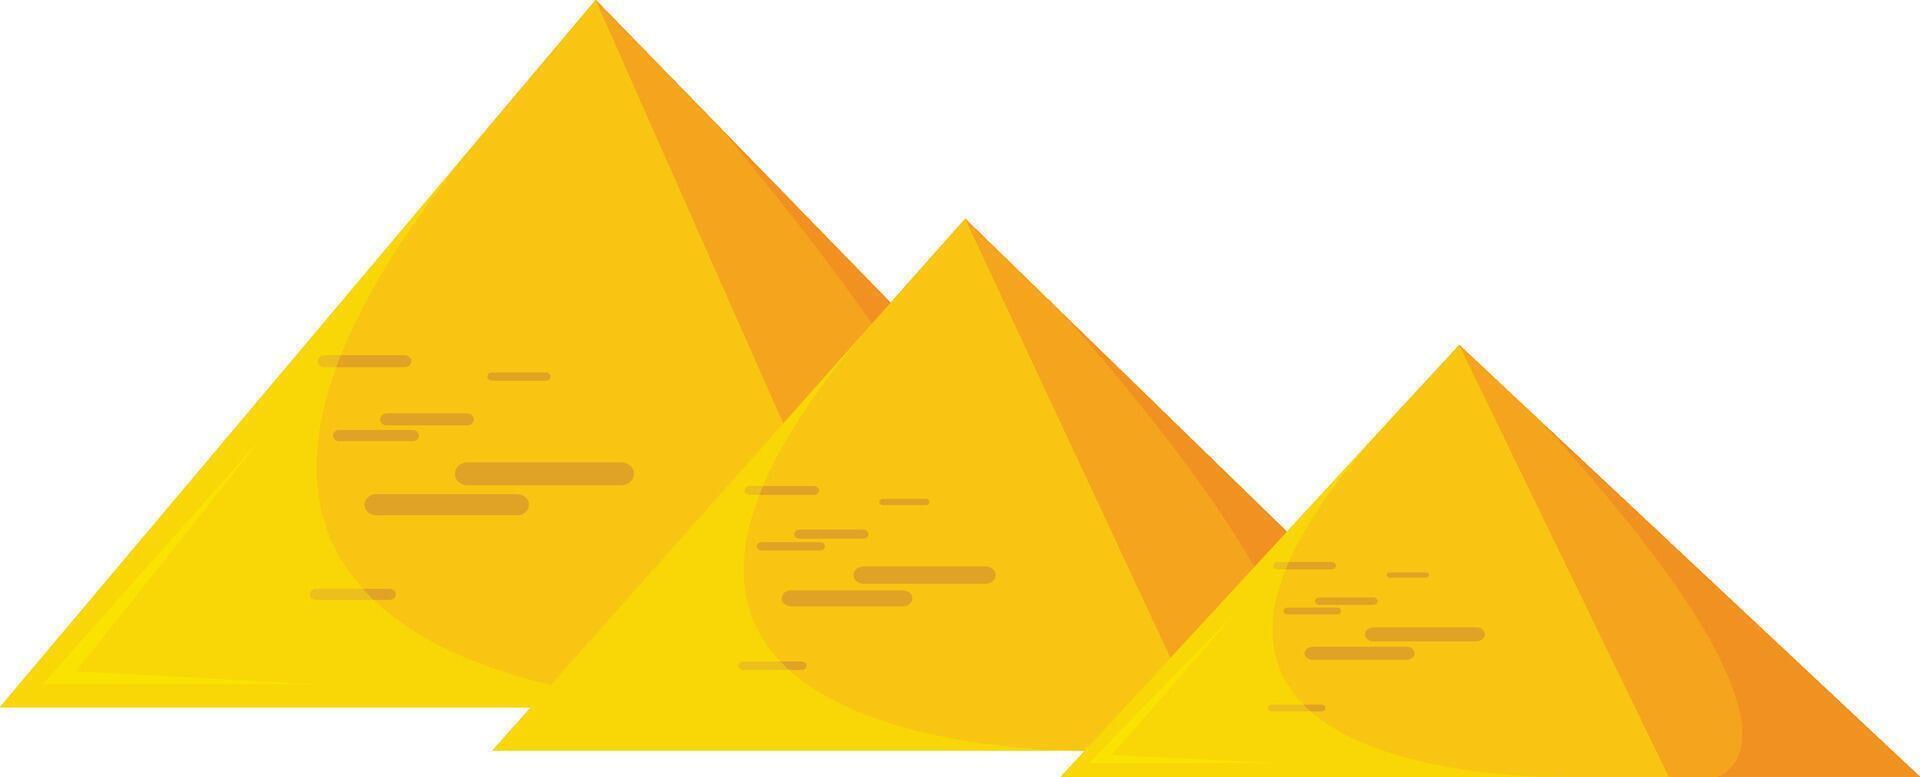 pyramids vector design